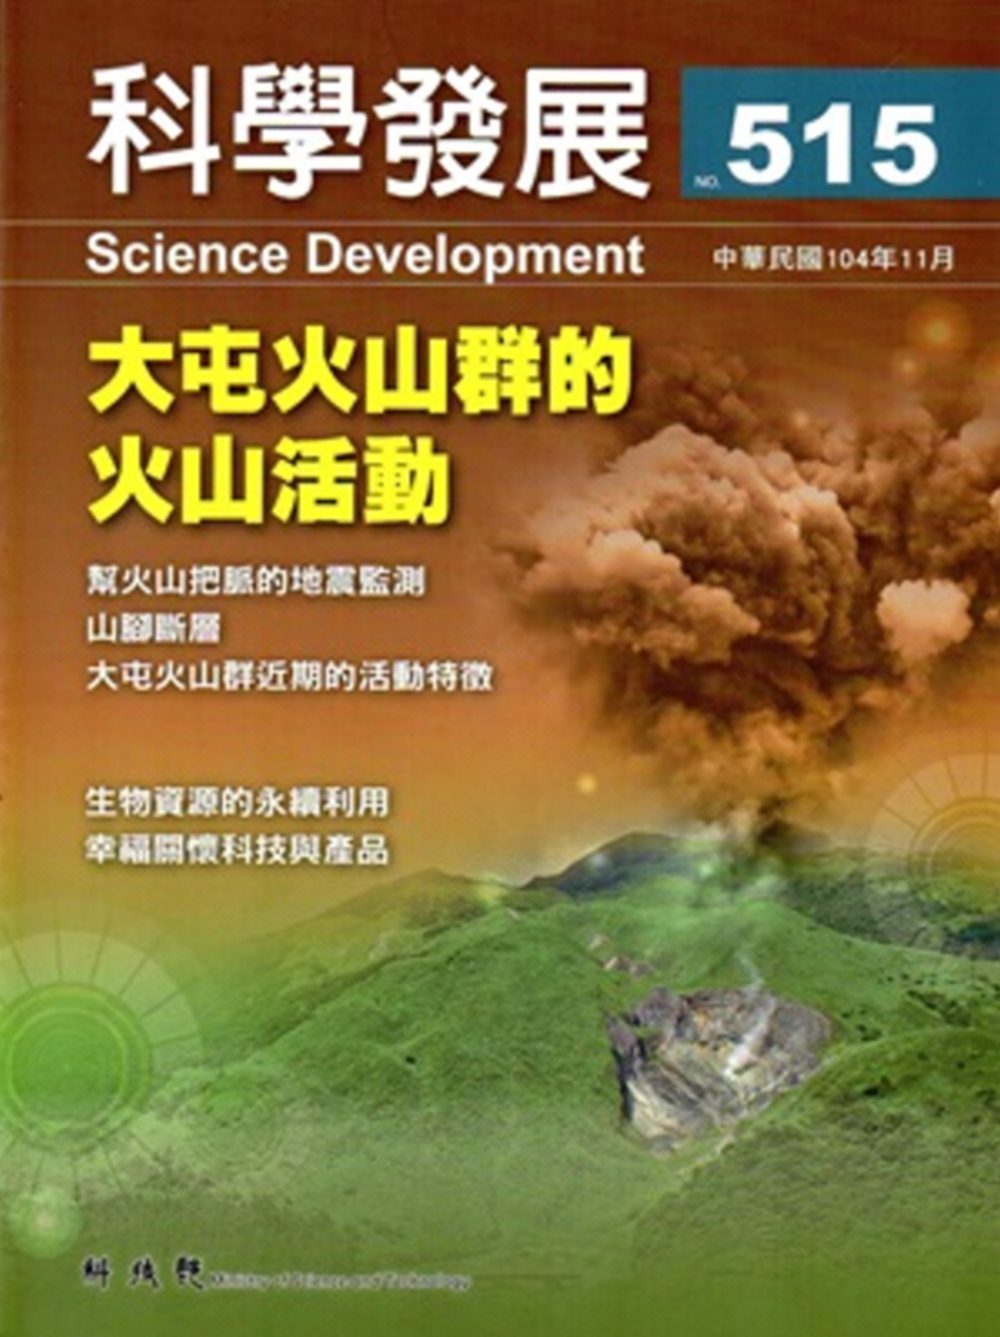 科學發展月刊第515期(104/11)